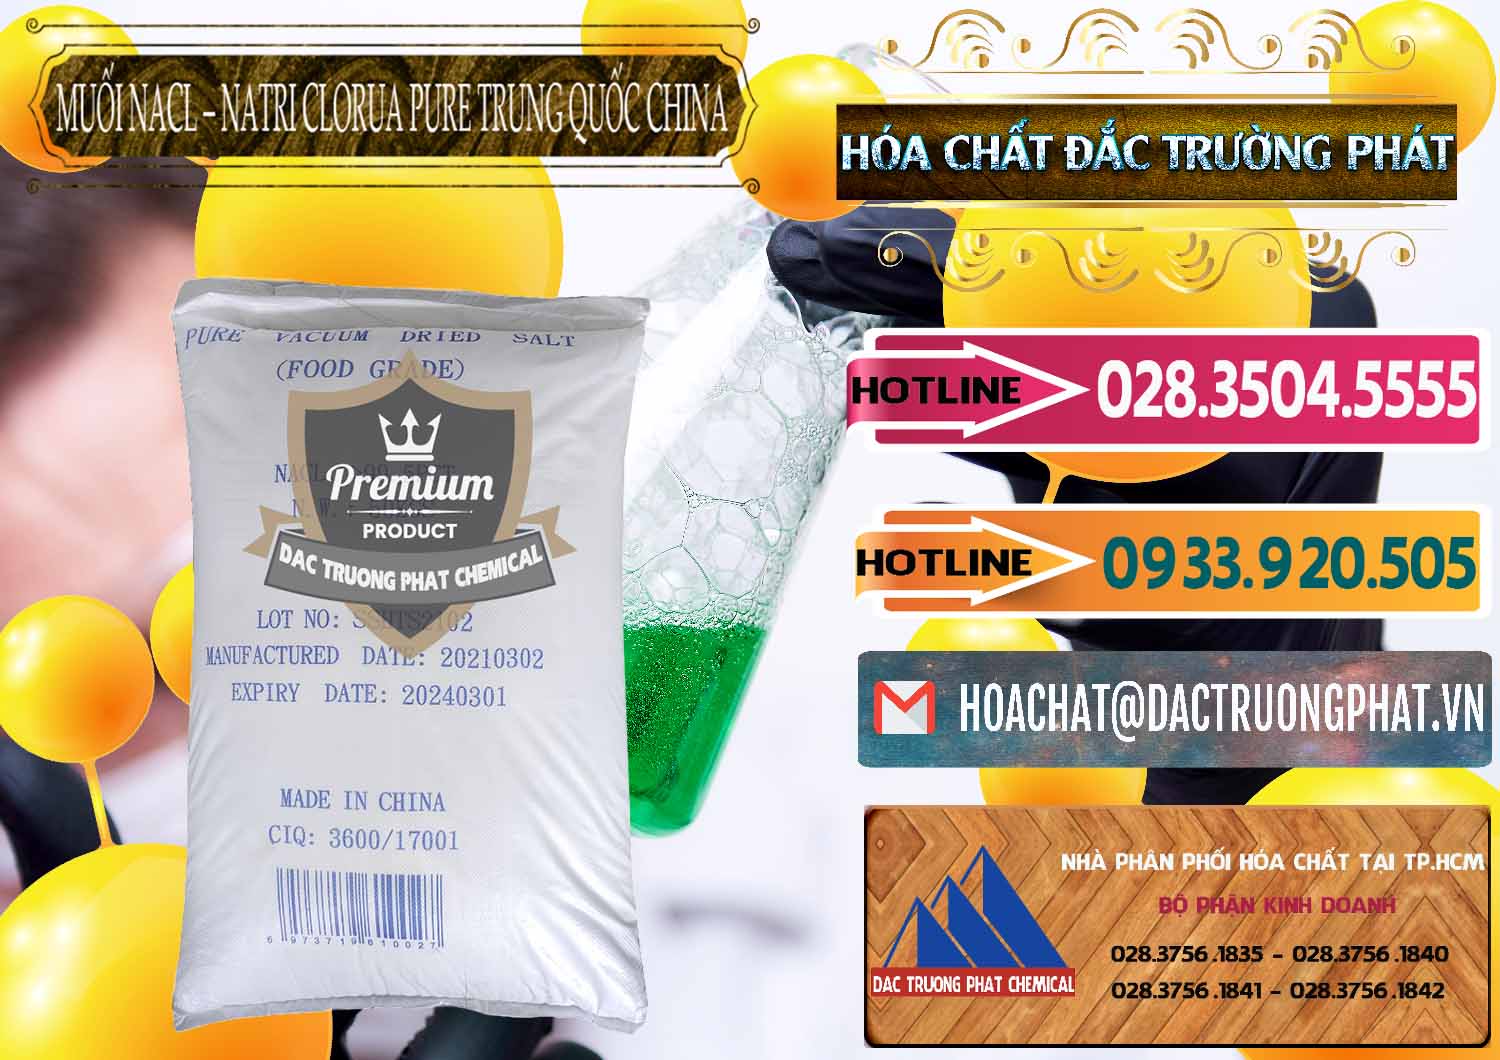 Chuyên bán _ cung cấp Muối NaCL – Sodium Chloride Pure Trung Quốc China - 0230 - Nhà phân phối & cung cấp hóa chất tại TP.HCM - dactruongphat.vn